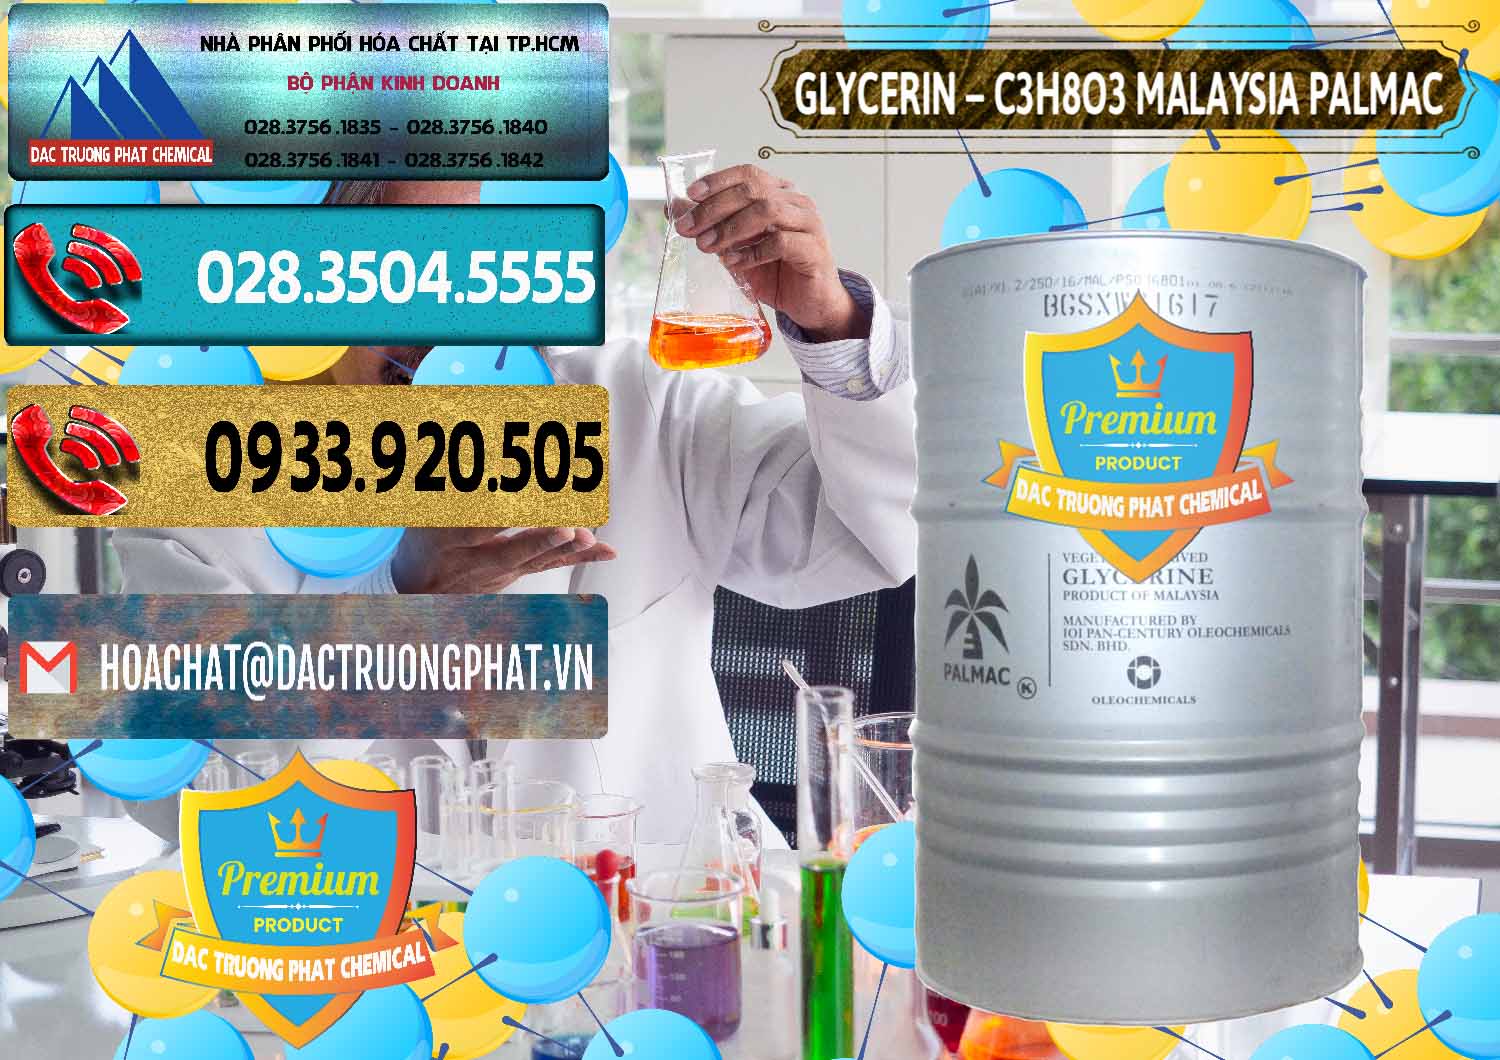 Cty phân phối & bán Glycerin – C3H8O3 99.7% Malaysia Palmac - 0067 - Phân phối và nhập khẩu hóa chất tại TP.HCM - hoachatdetnhuom.com